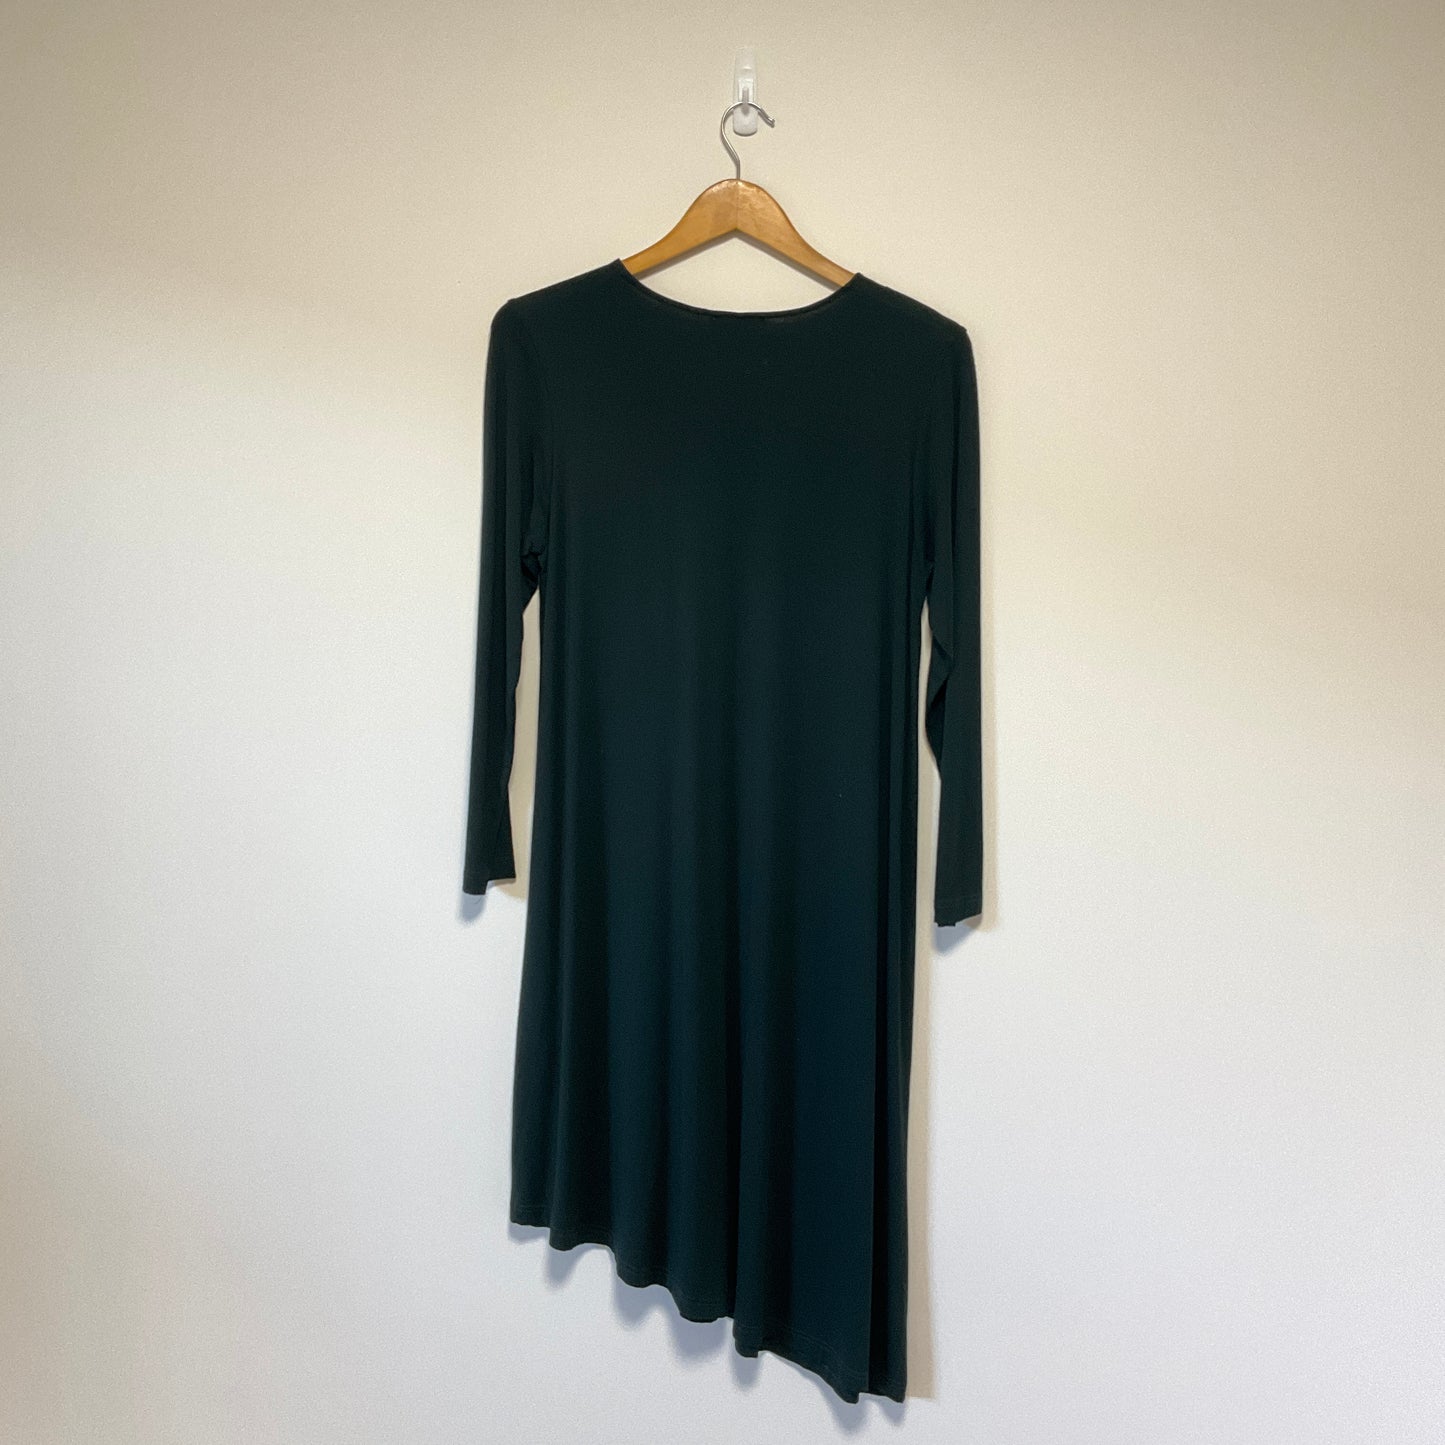 Bittermoon - Dark Green Asymmetrical Dress